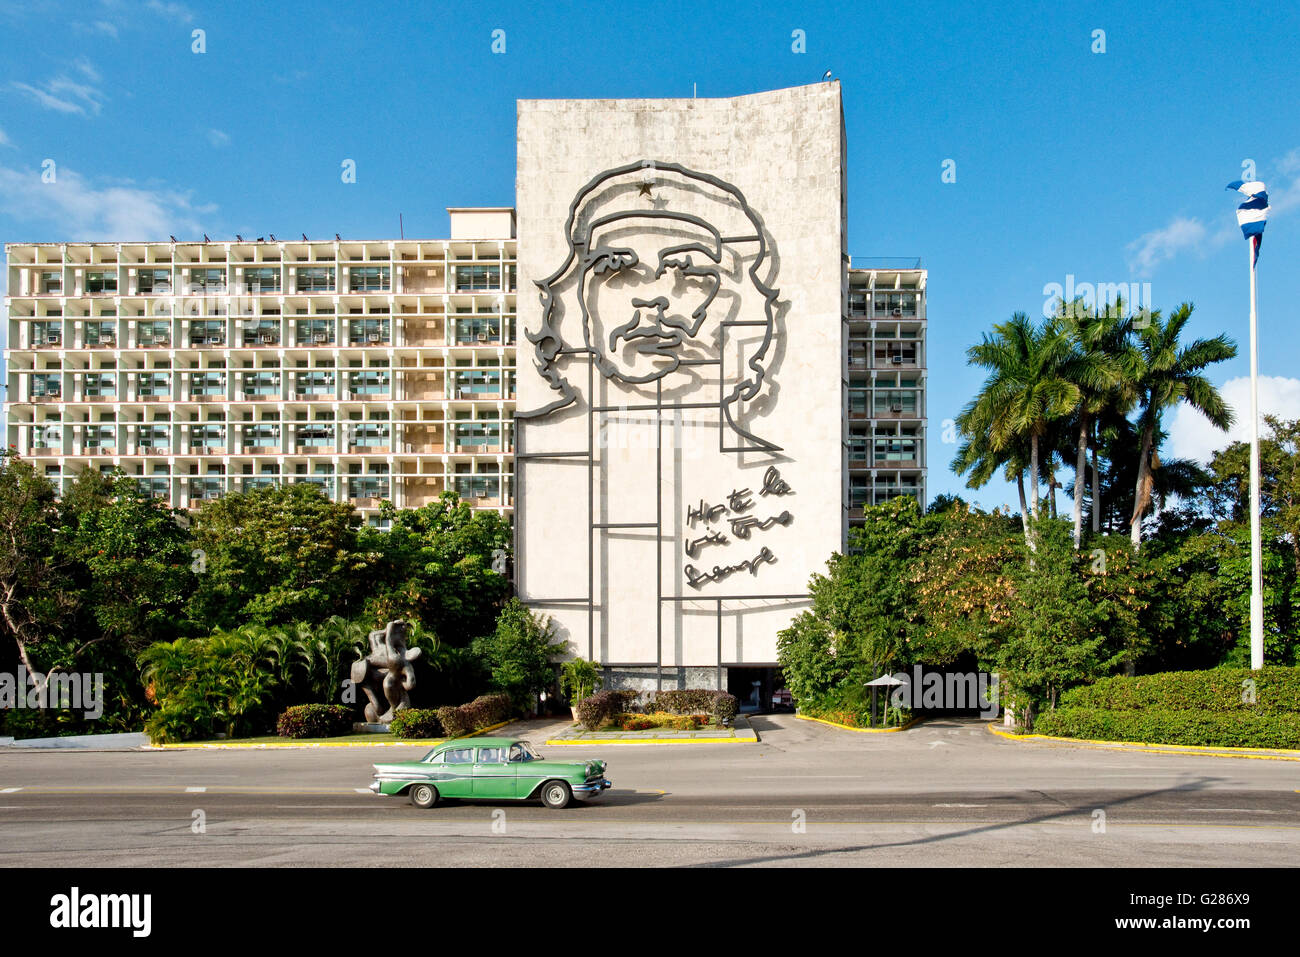 Un 1957 Pontiac starchief sur la place de la révolution passent le ministère de l'intérieur, avec l'image de Che Guevara. Banque D'Images